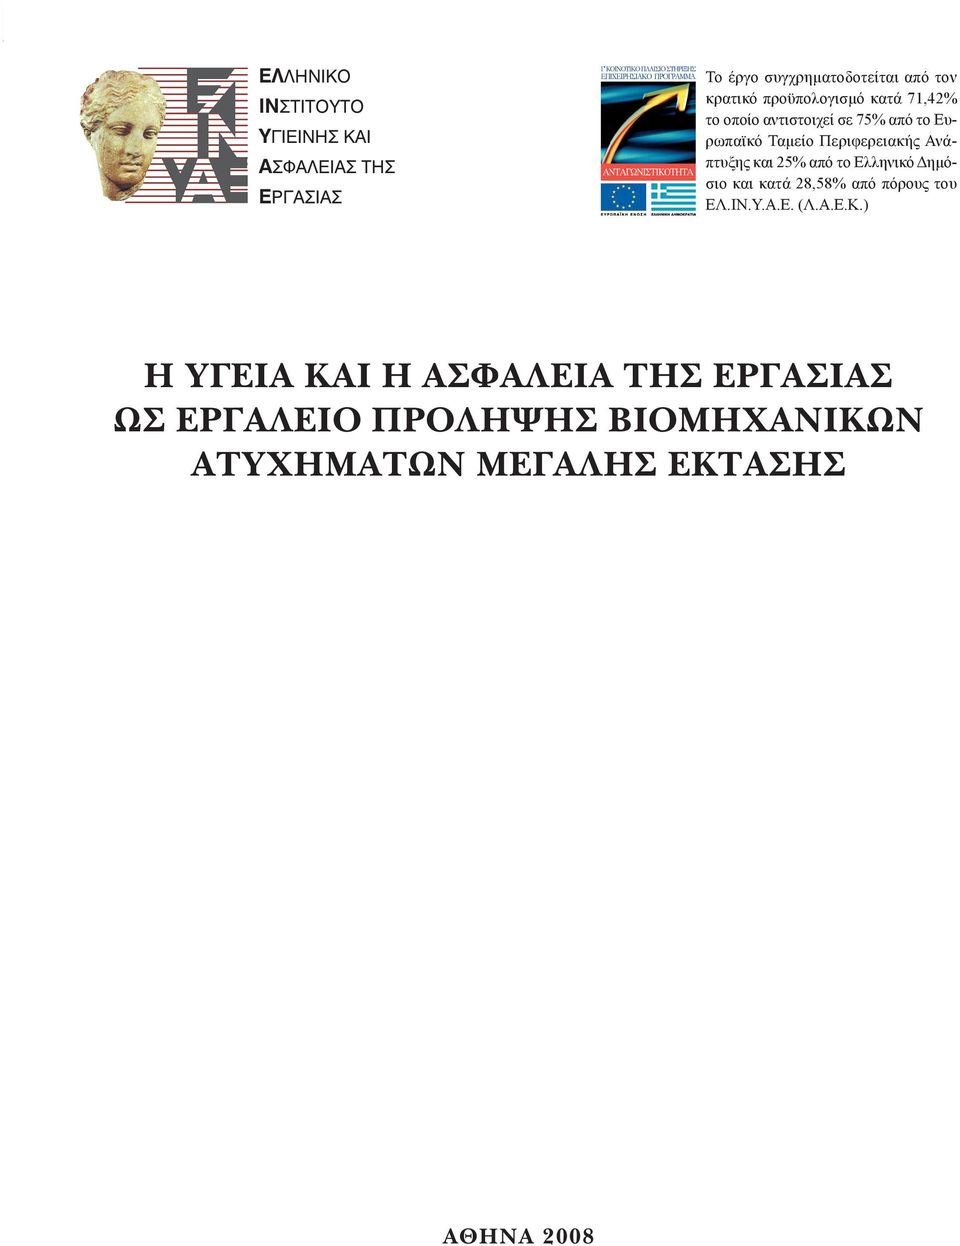 Ανάπτυξης και 25% από το Ελληνικό Δημόσιο και κατά 28,58% από πόρους του ΕΛ.ΙΝ.Υ.Α.Ε. (Λ.Α.Ε.Κ.